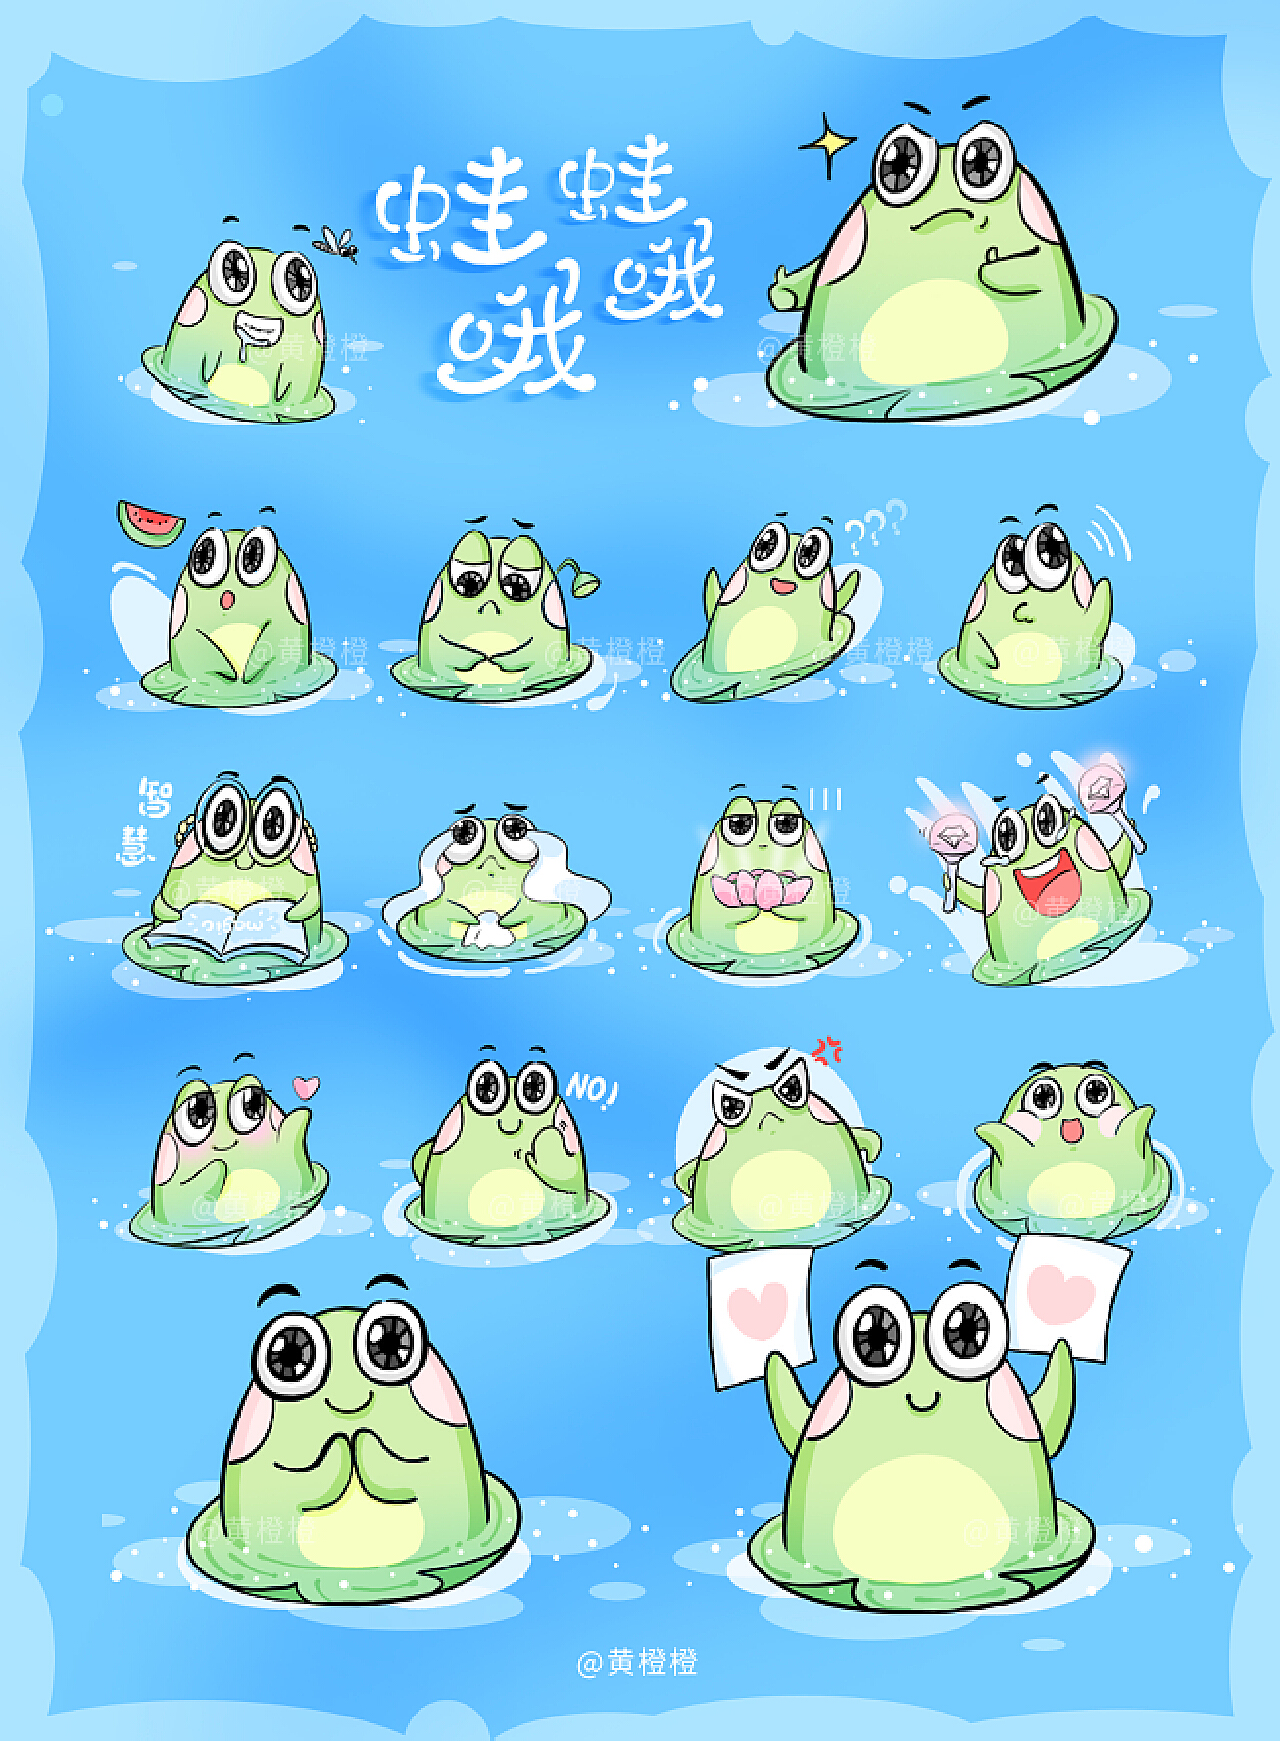 表情啊 小青蛙插畫 小青蛙 小青蛙表情包貼圖, 小青蛙, 小青蛙表情插畫, 表情啊小青蛙插畫素材圖案，PSD和PNG圖片免費下載